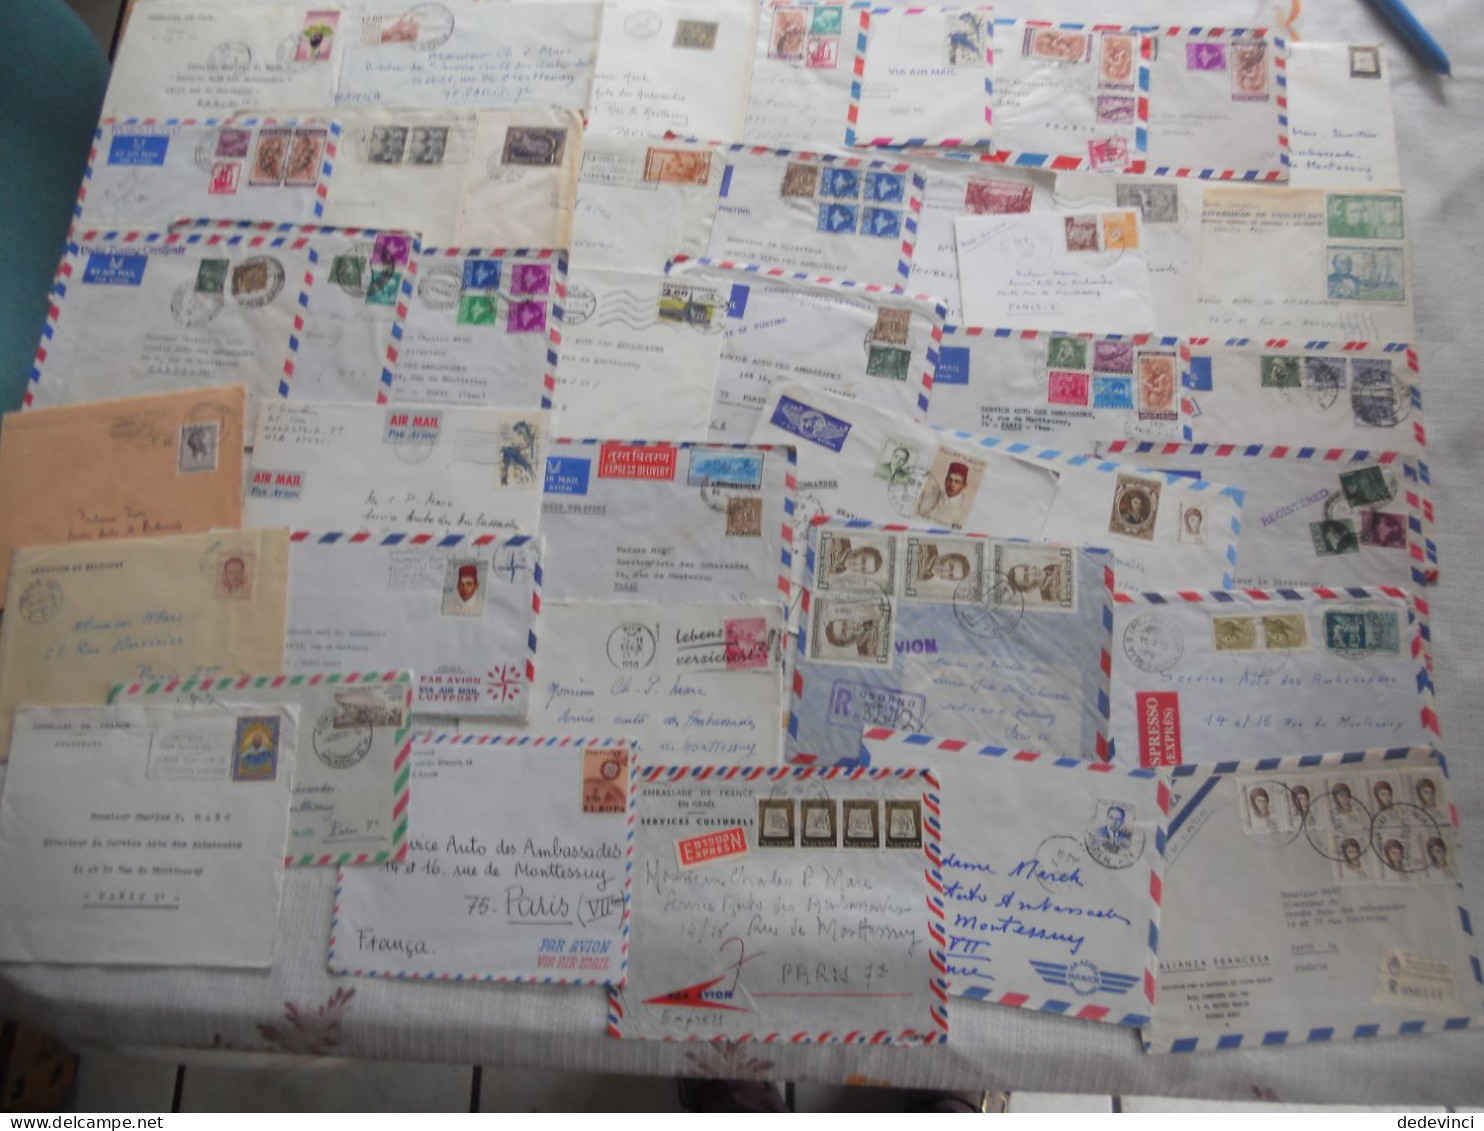 Lot de lettre issu archive pour Serv. auto Ambassade France des ambassade dans le monde, Reco, exprès...